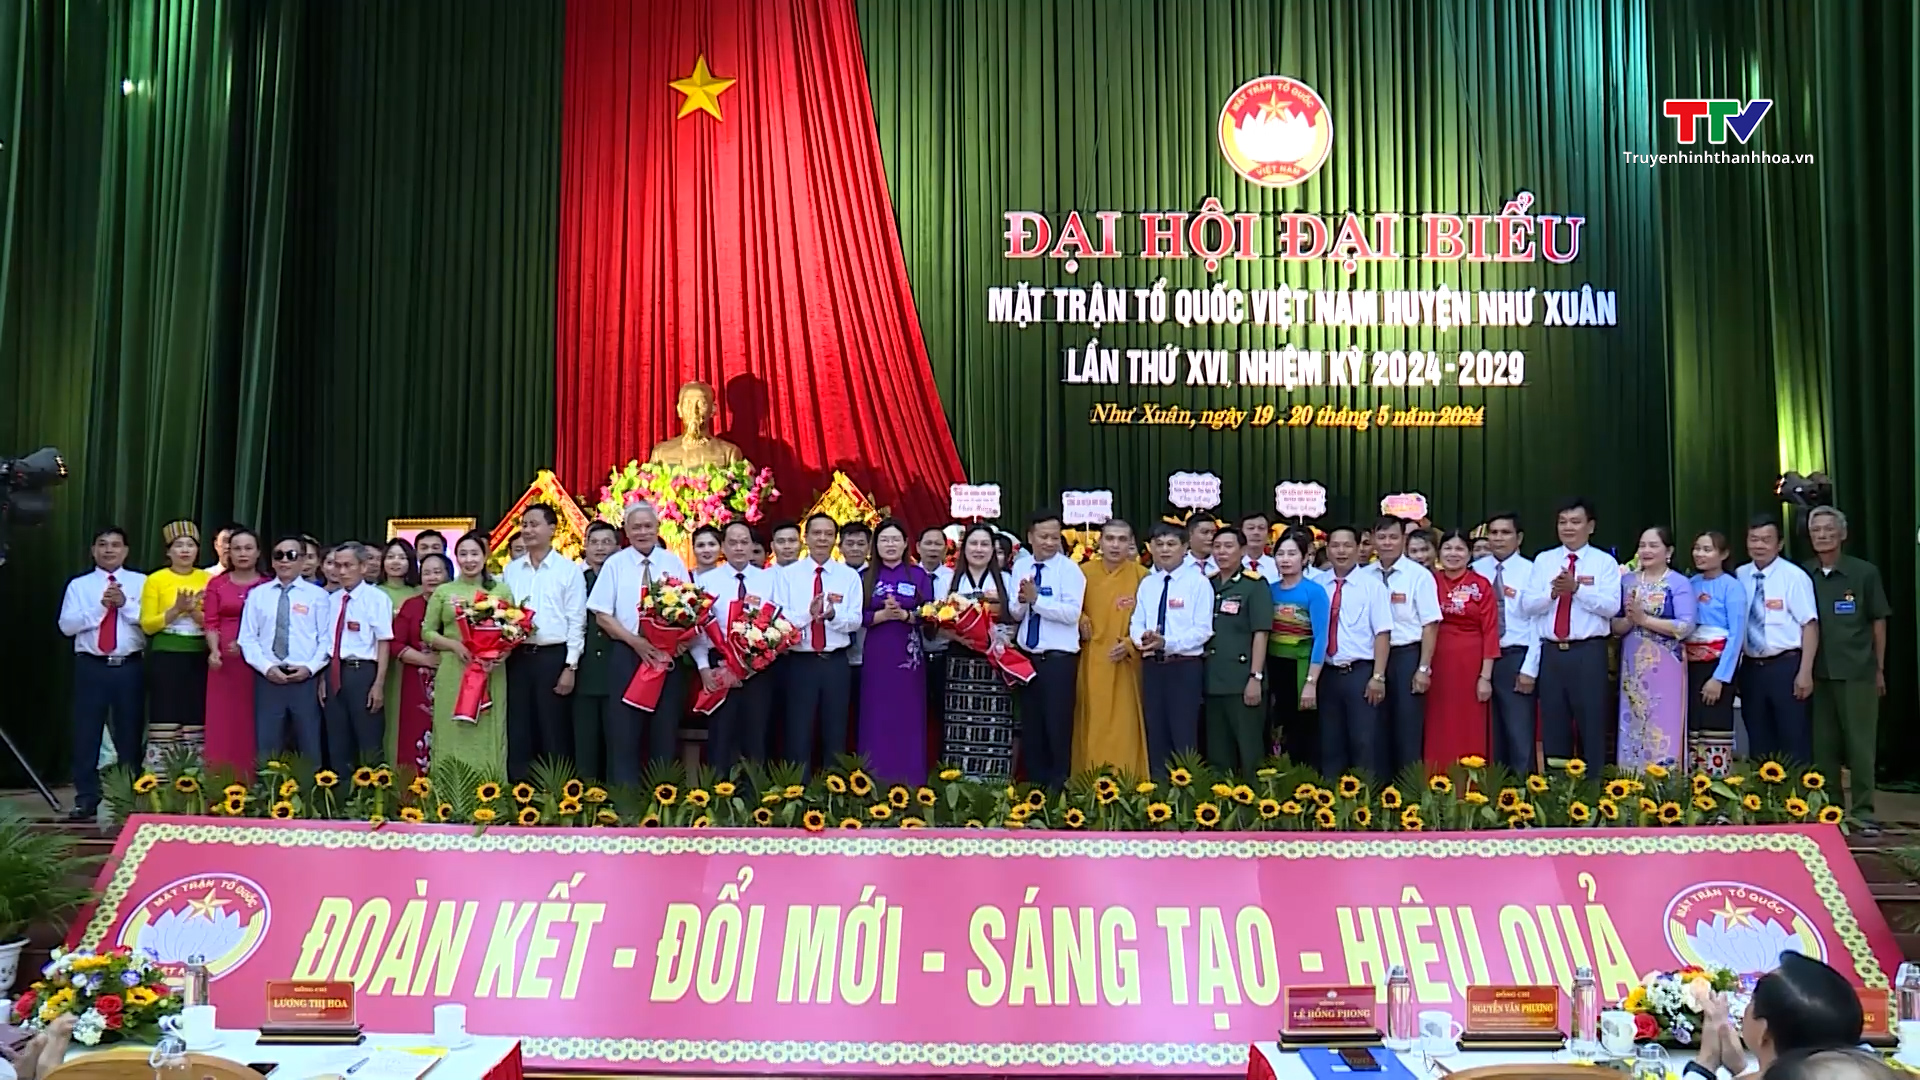 Đại hội đại biểu MTTQ huyện Như Xuân lần thứ XVI, nhiệm kỳ 2024-2029- Ảnh 1.